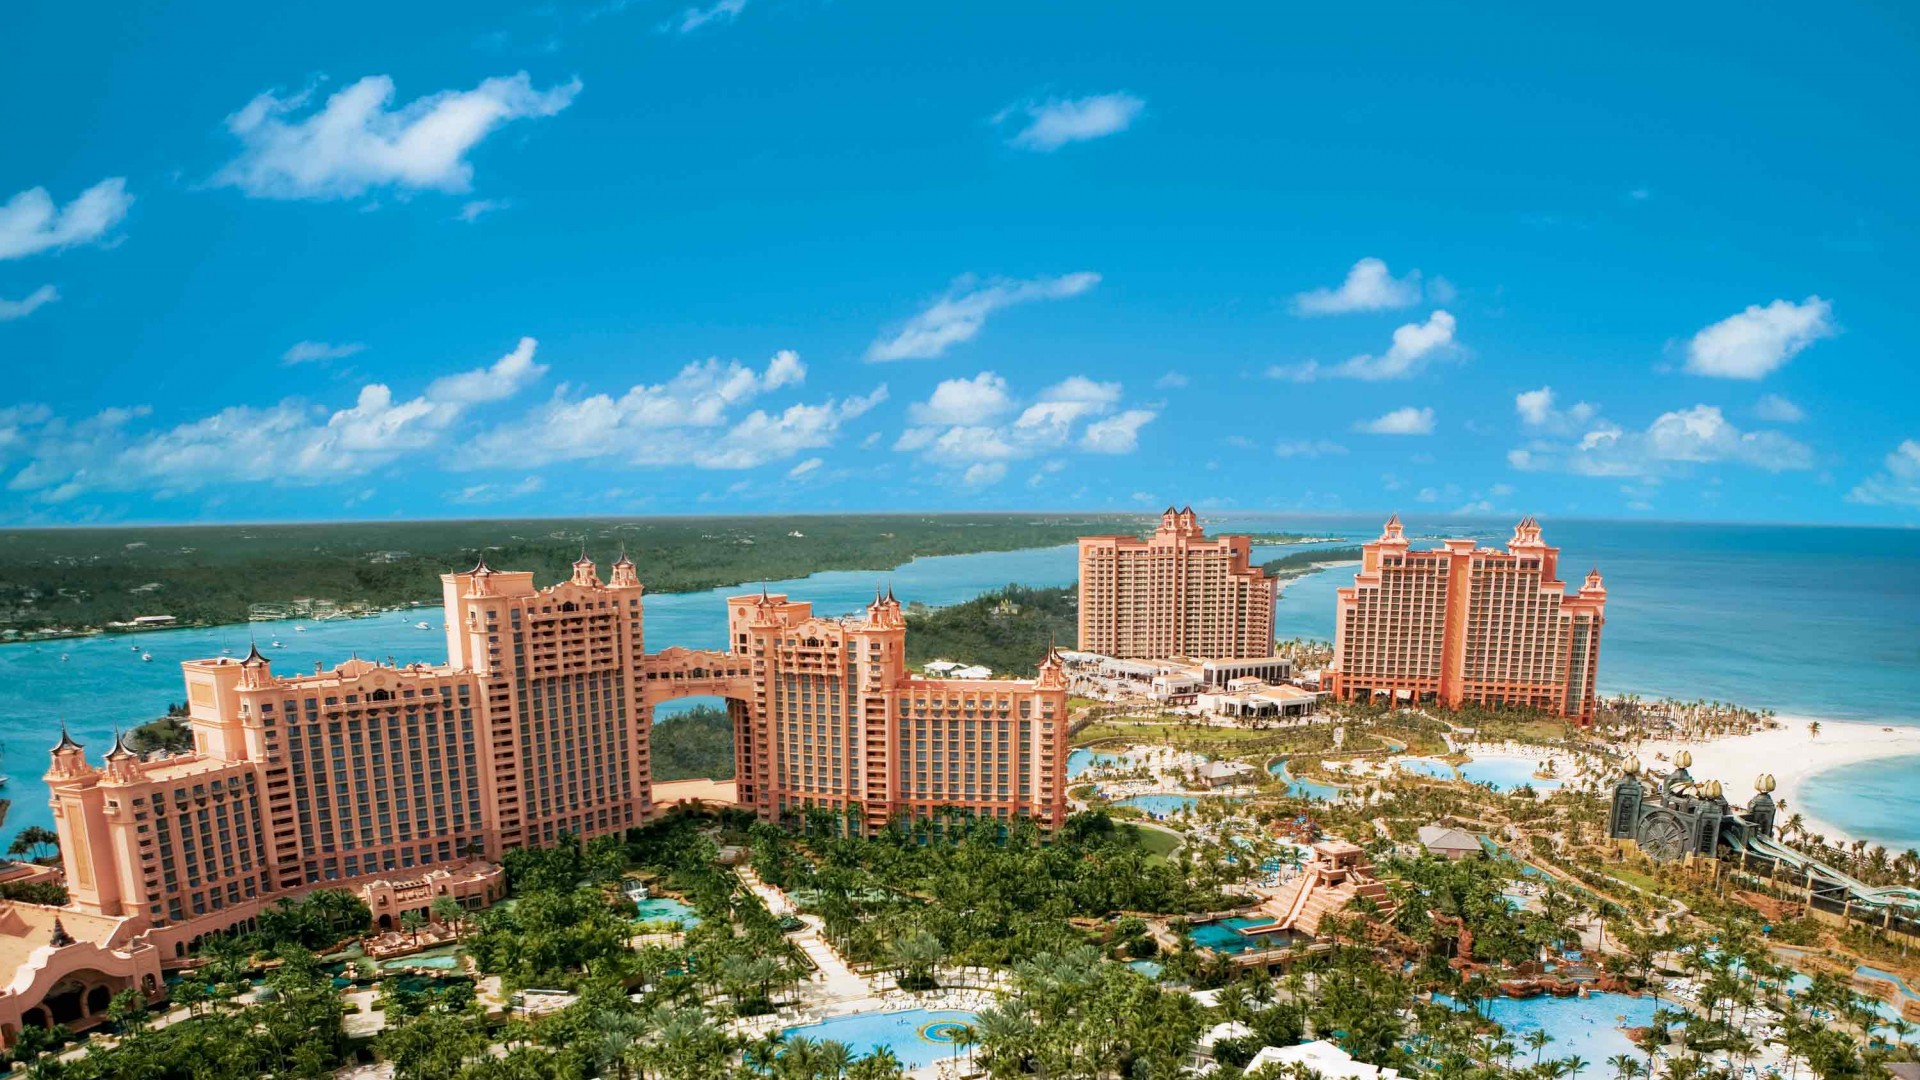 Багамы, остров, отдых, курорт, отель, море, океан, бассейн, путешествие, пляж, пальма, синий, голубой, Bahamas, island, resort, hotel, sea, ocean, travel, booking, pool, beach, palm, vacation, sky, blue (horizontal)